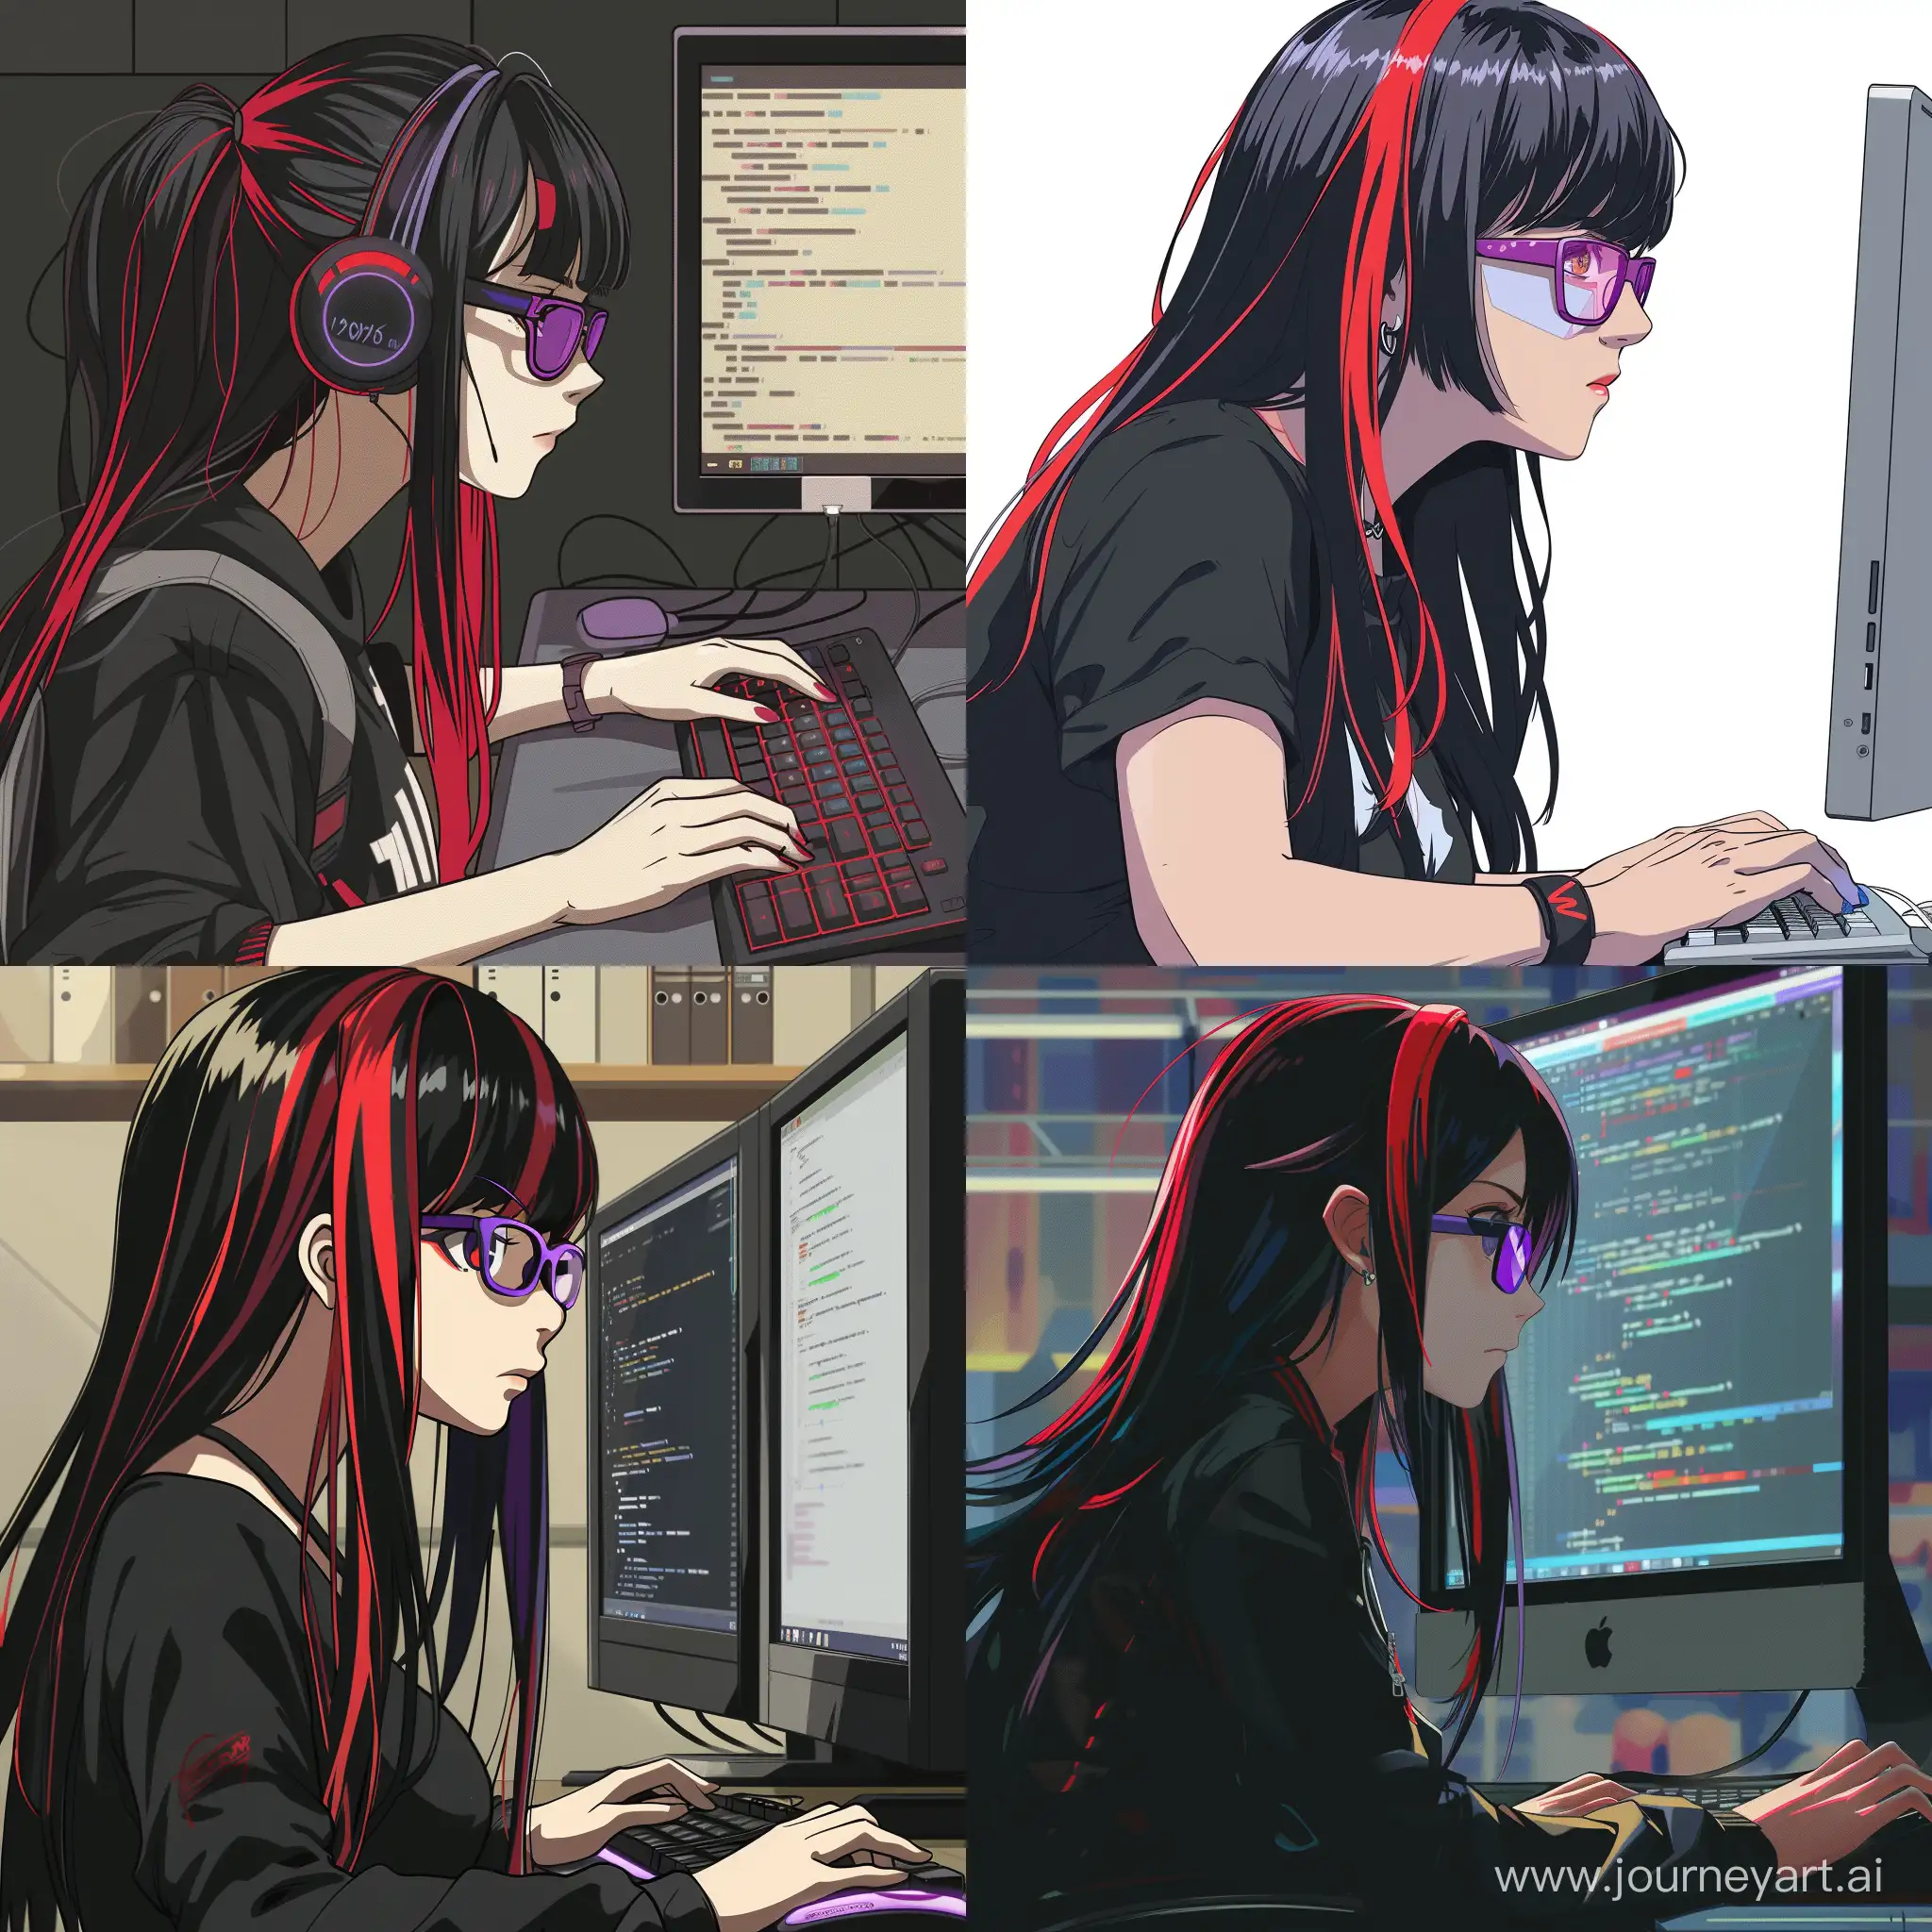 une femme type manga shonen avec cheveux longs noirs, mèches rouges, petites lunettes rectangulaires et violettes. Elle est en train de programmer en pyton sur un ordinateur